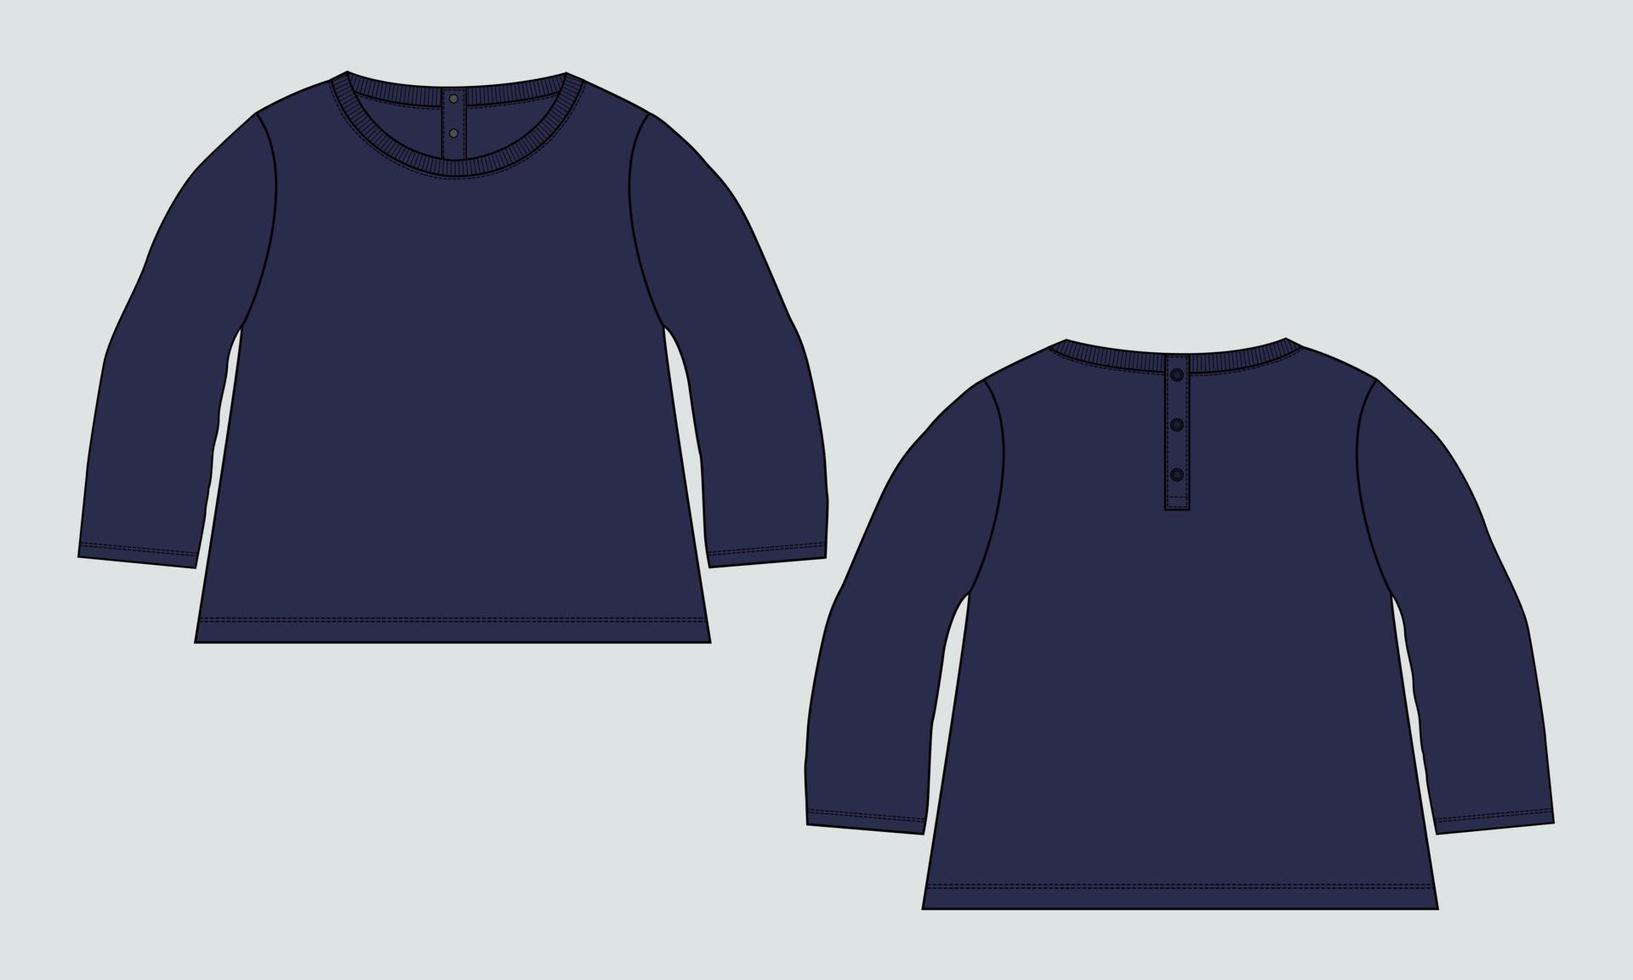 Langarm mit Rundhalsausschnitt, T-Shirt-Tops, Kleiderdesign für Kinder und Damen. technische mode flache skizze bekleidung vektor illustration vorlage vorder- und rückansichten